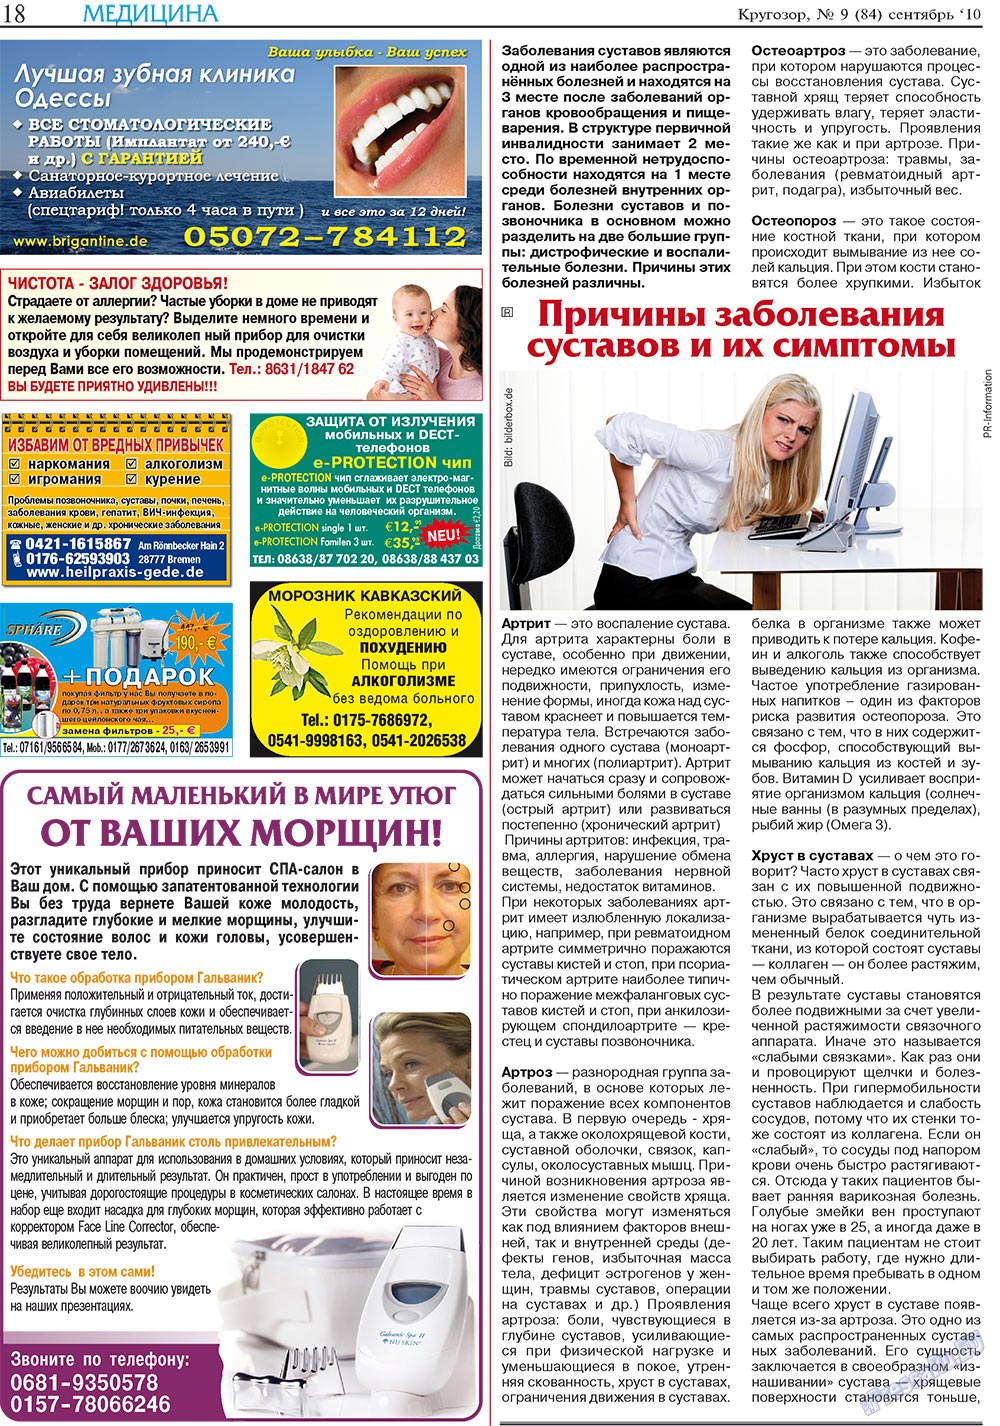 Кругозор плюс!, газета. 2010 №9 стр.42